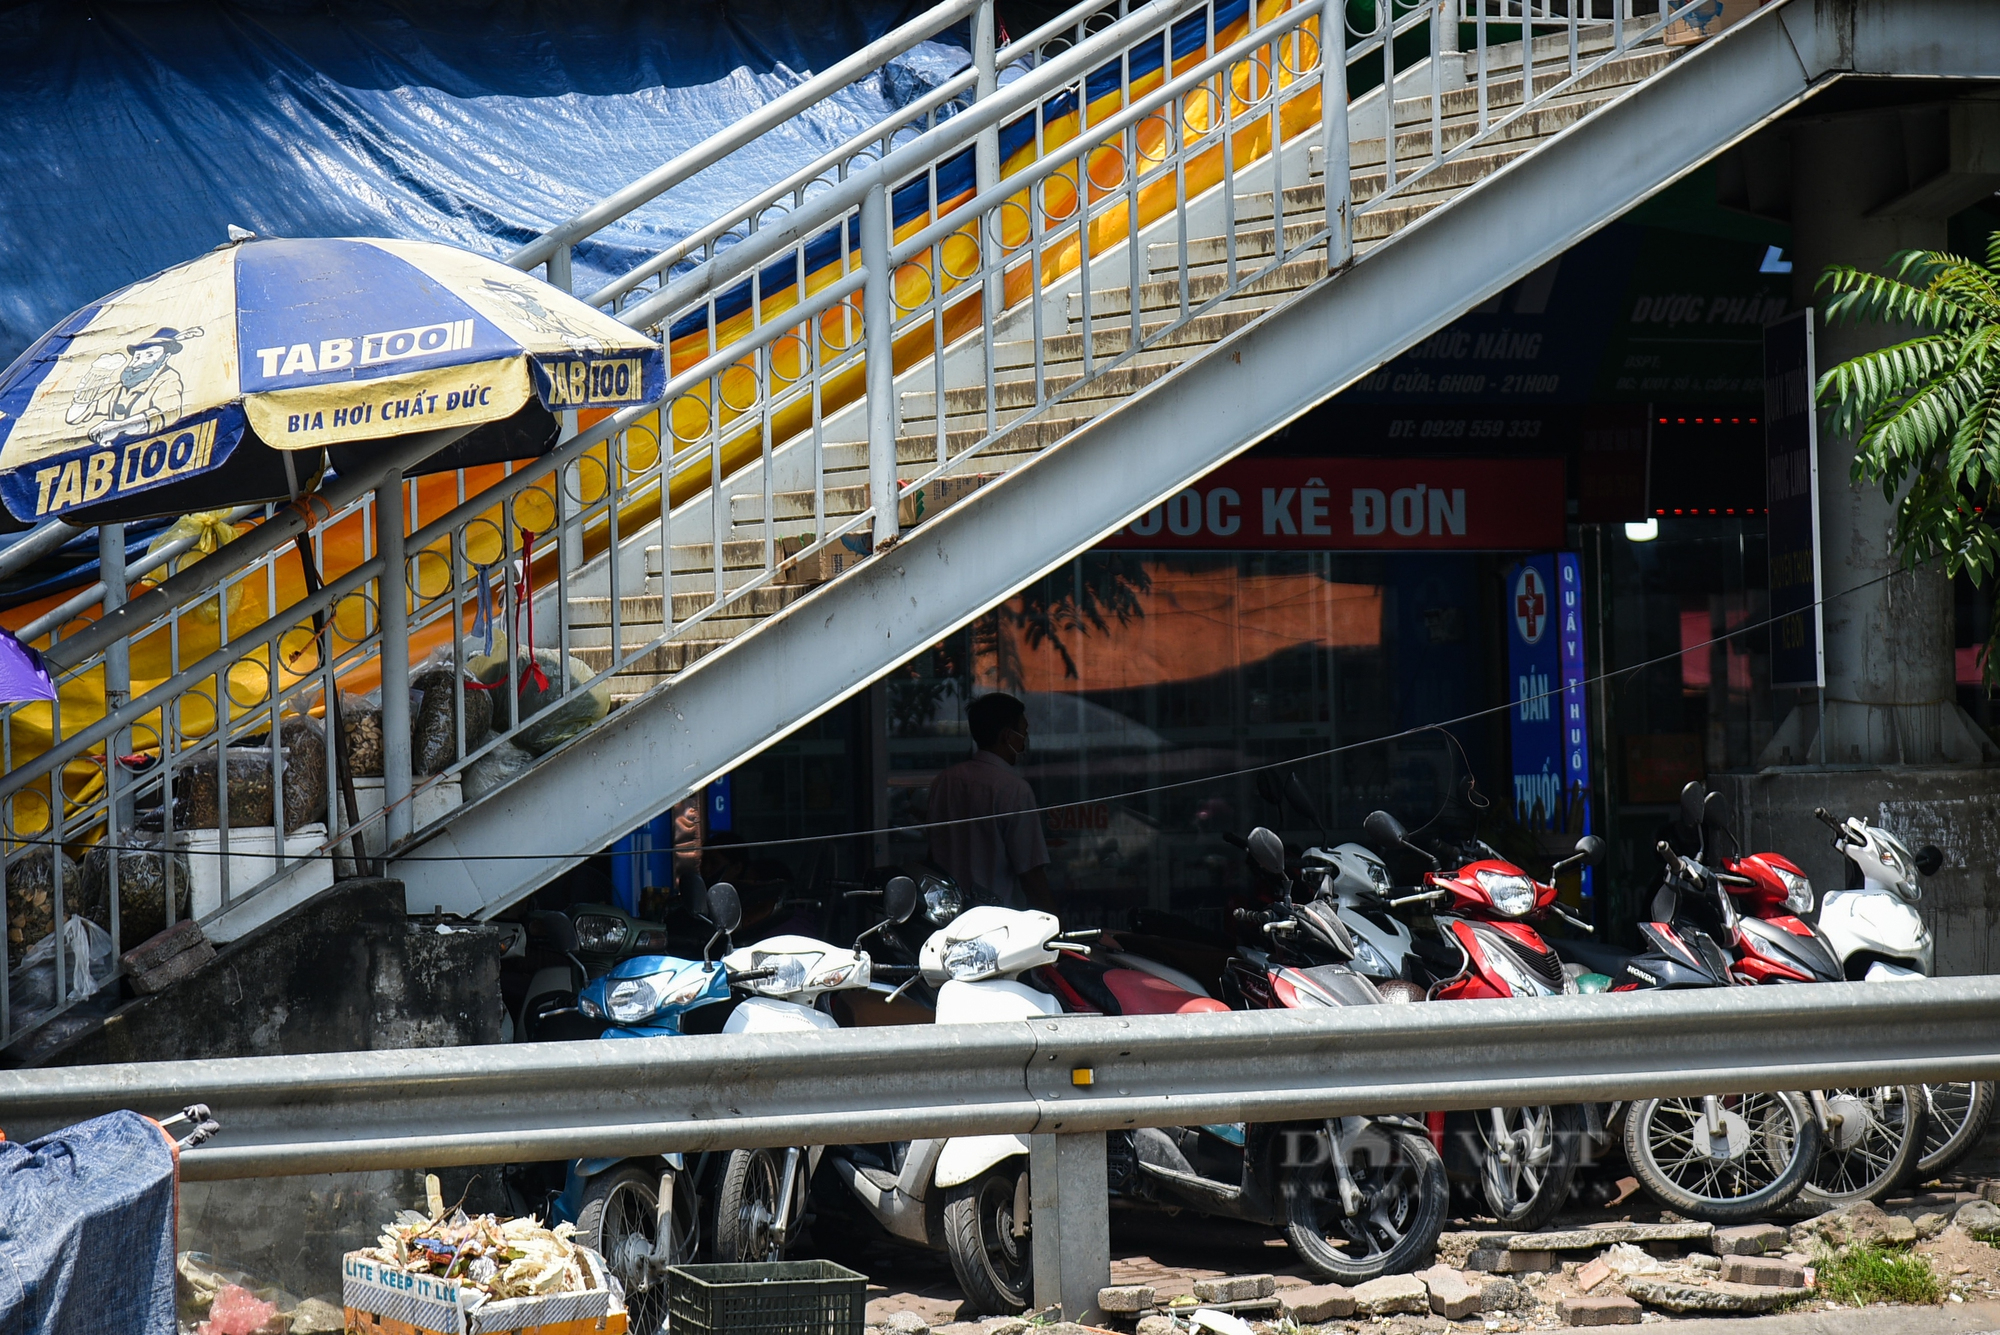 Tình trạng cầu vượt bộ hành ở Hà Nội: Nơi khang trang, chổ nhếch nhác mất mỹ quan đô thị - Ảnh 7.